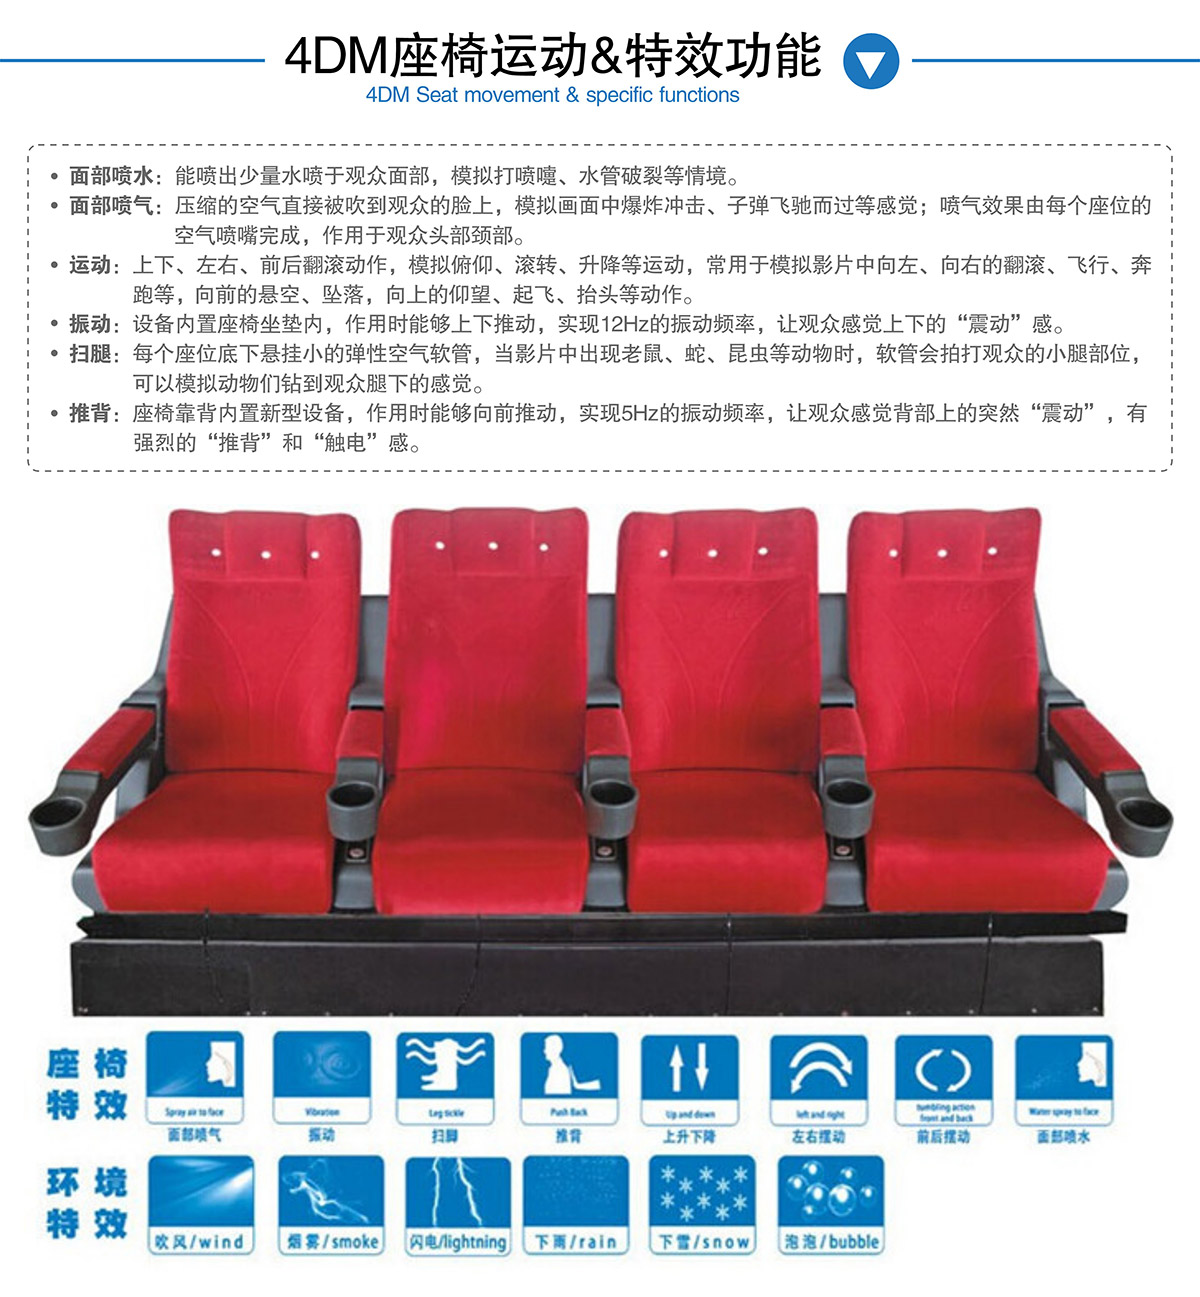 甘肃兰州奇影幻境4DM座椅运动和特效功能.jpg